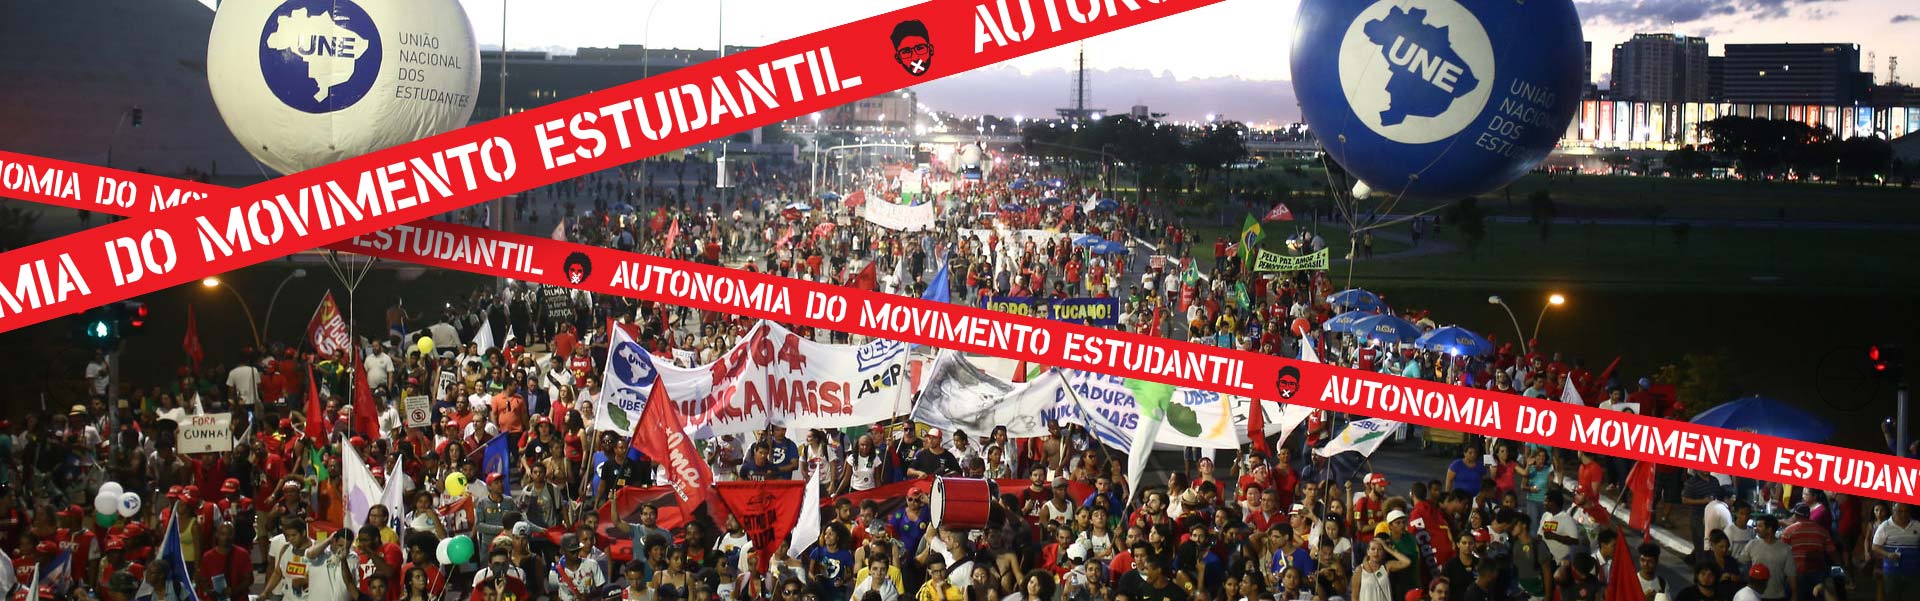 Autonomia do movimento estudantil